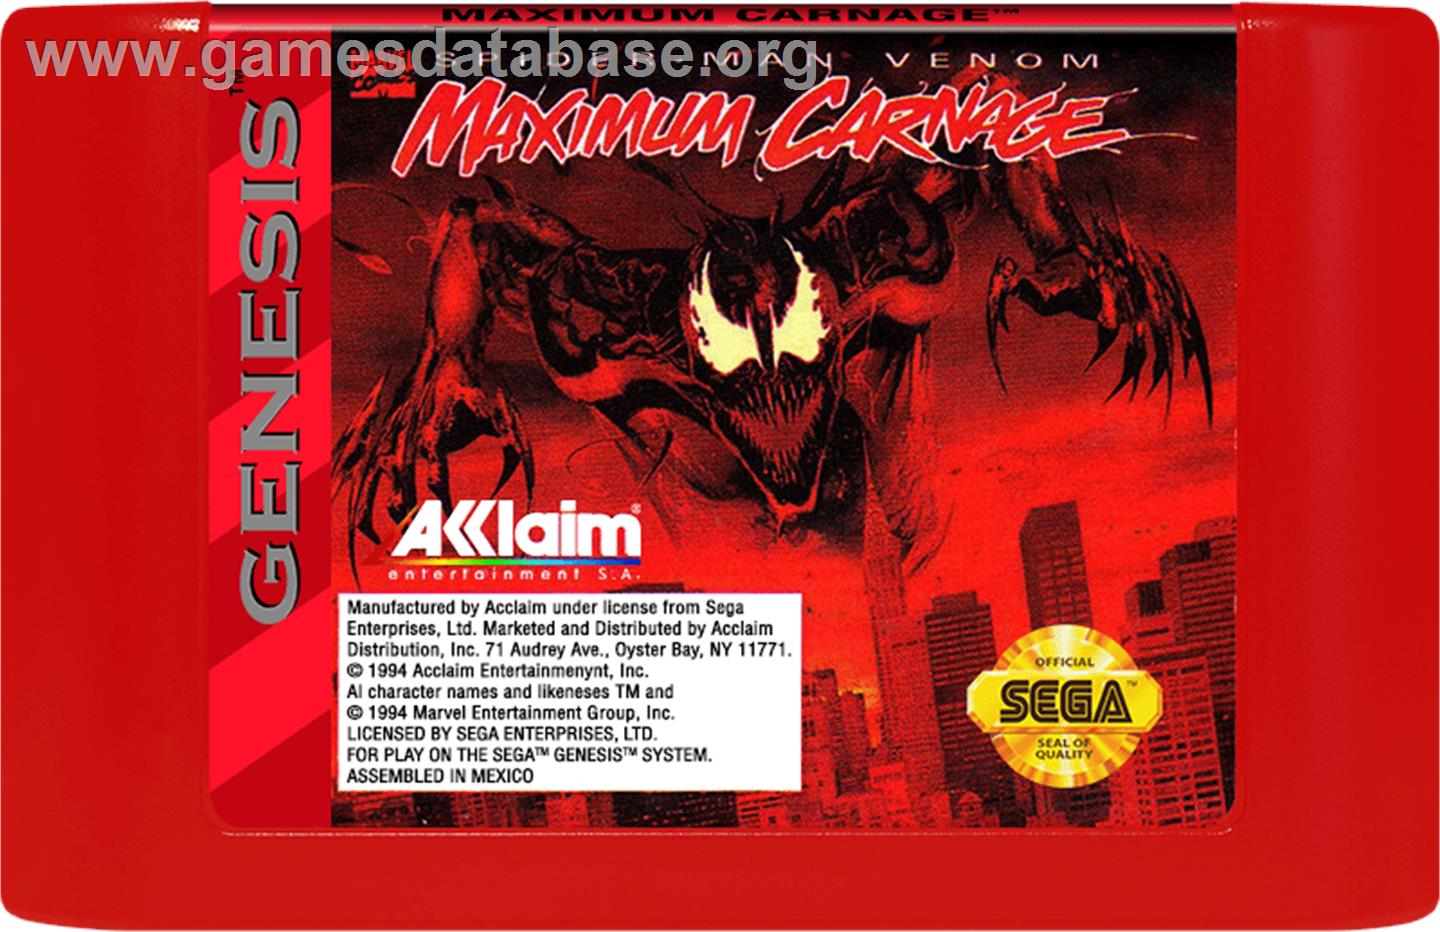 Spider-Man & Venom: Maximum Carnage - Sega Genesis - Artwork - Cartridge